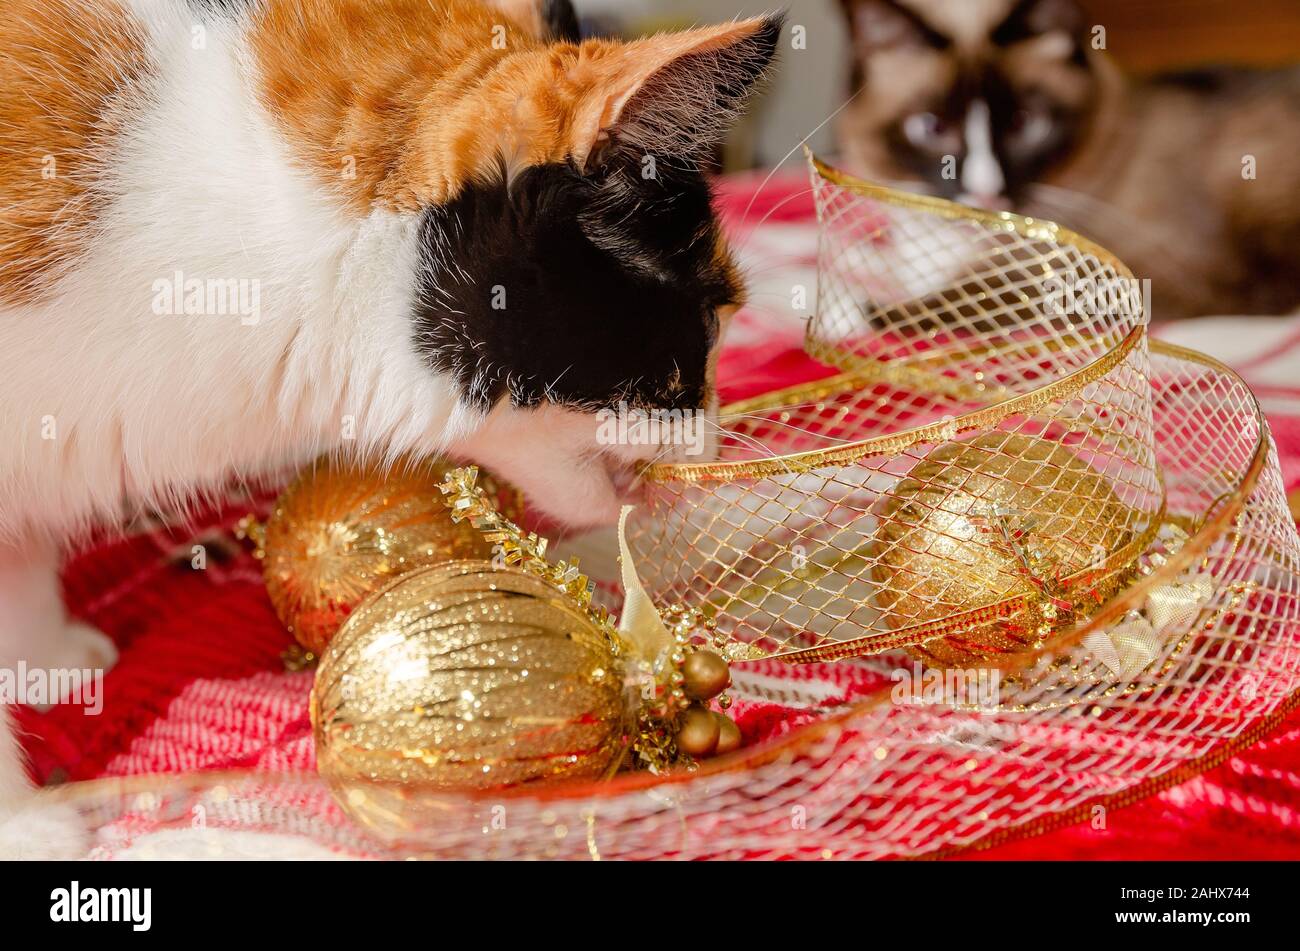 Citrouille, quatre-année-vieux chat calico, mâche en ruban de Noël d'or comme un chat siamois watches, le 29 décembre 2019, dans la région de Coden, Alabama. Banque D'Images